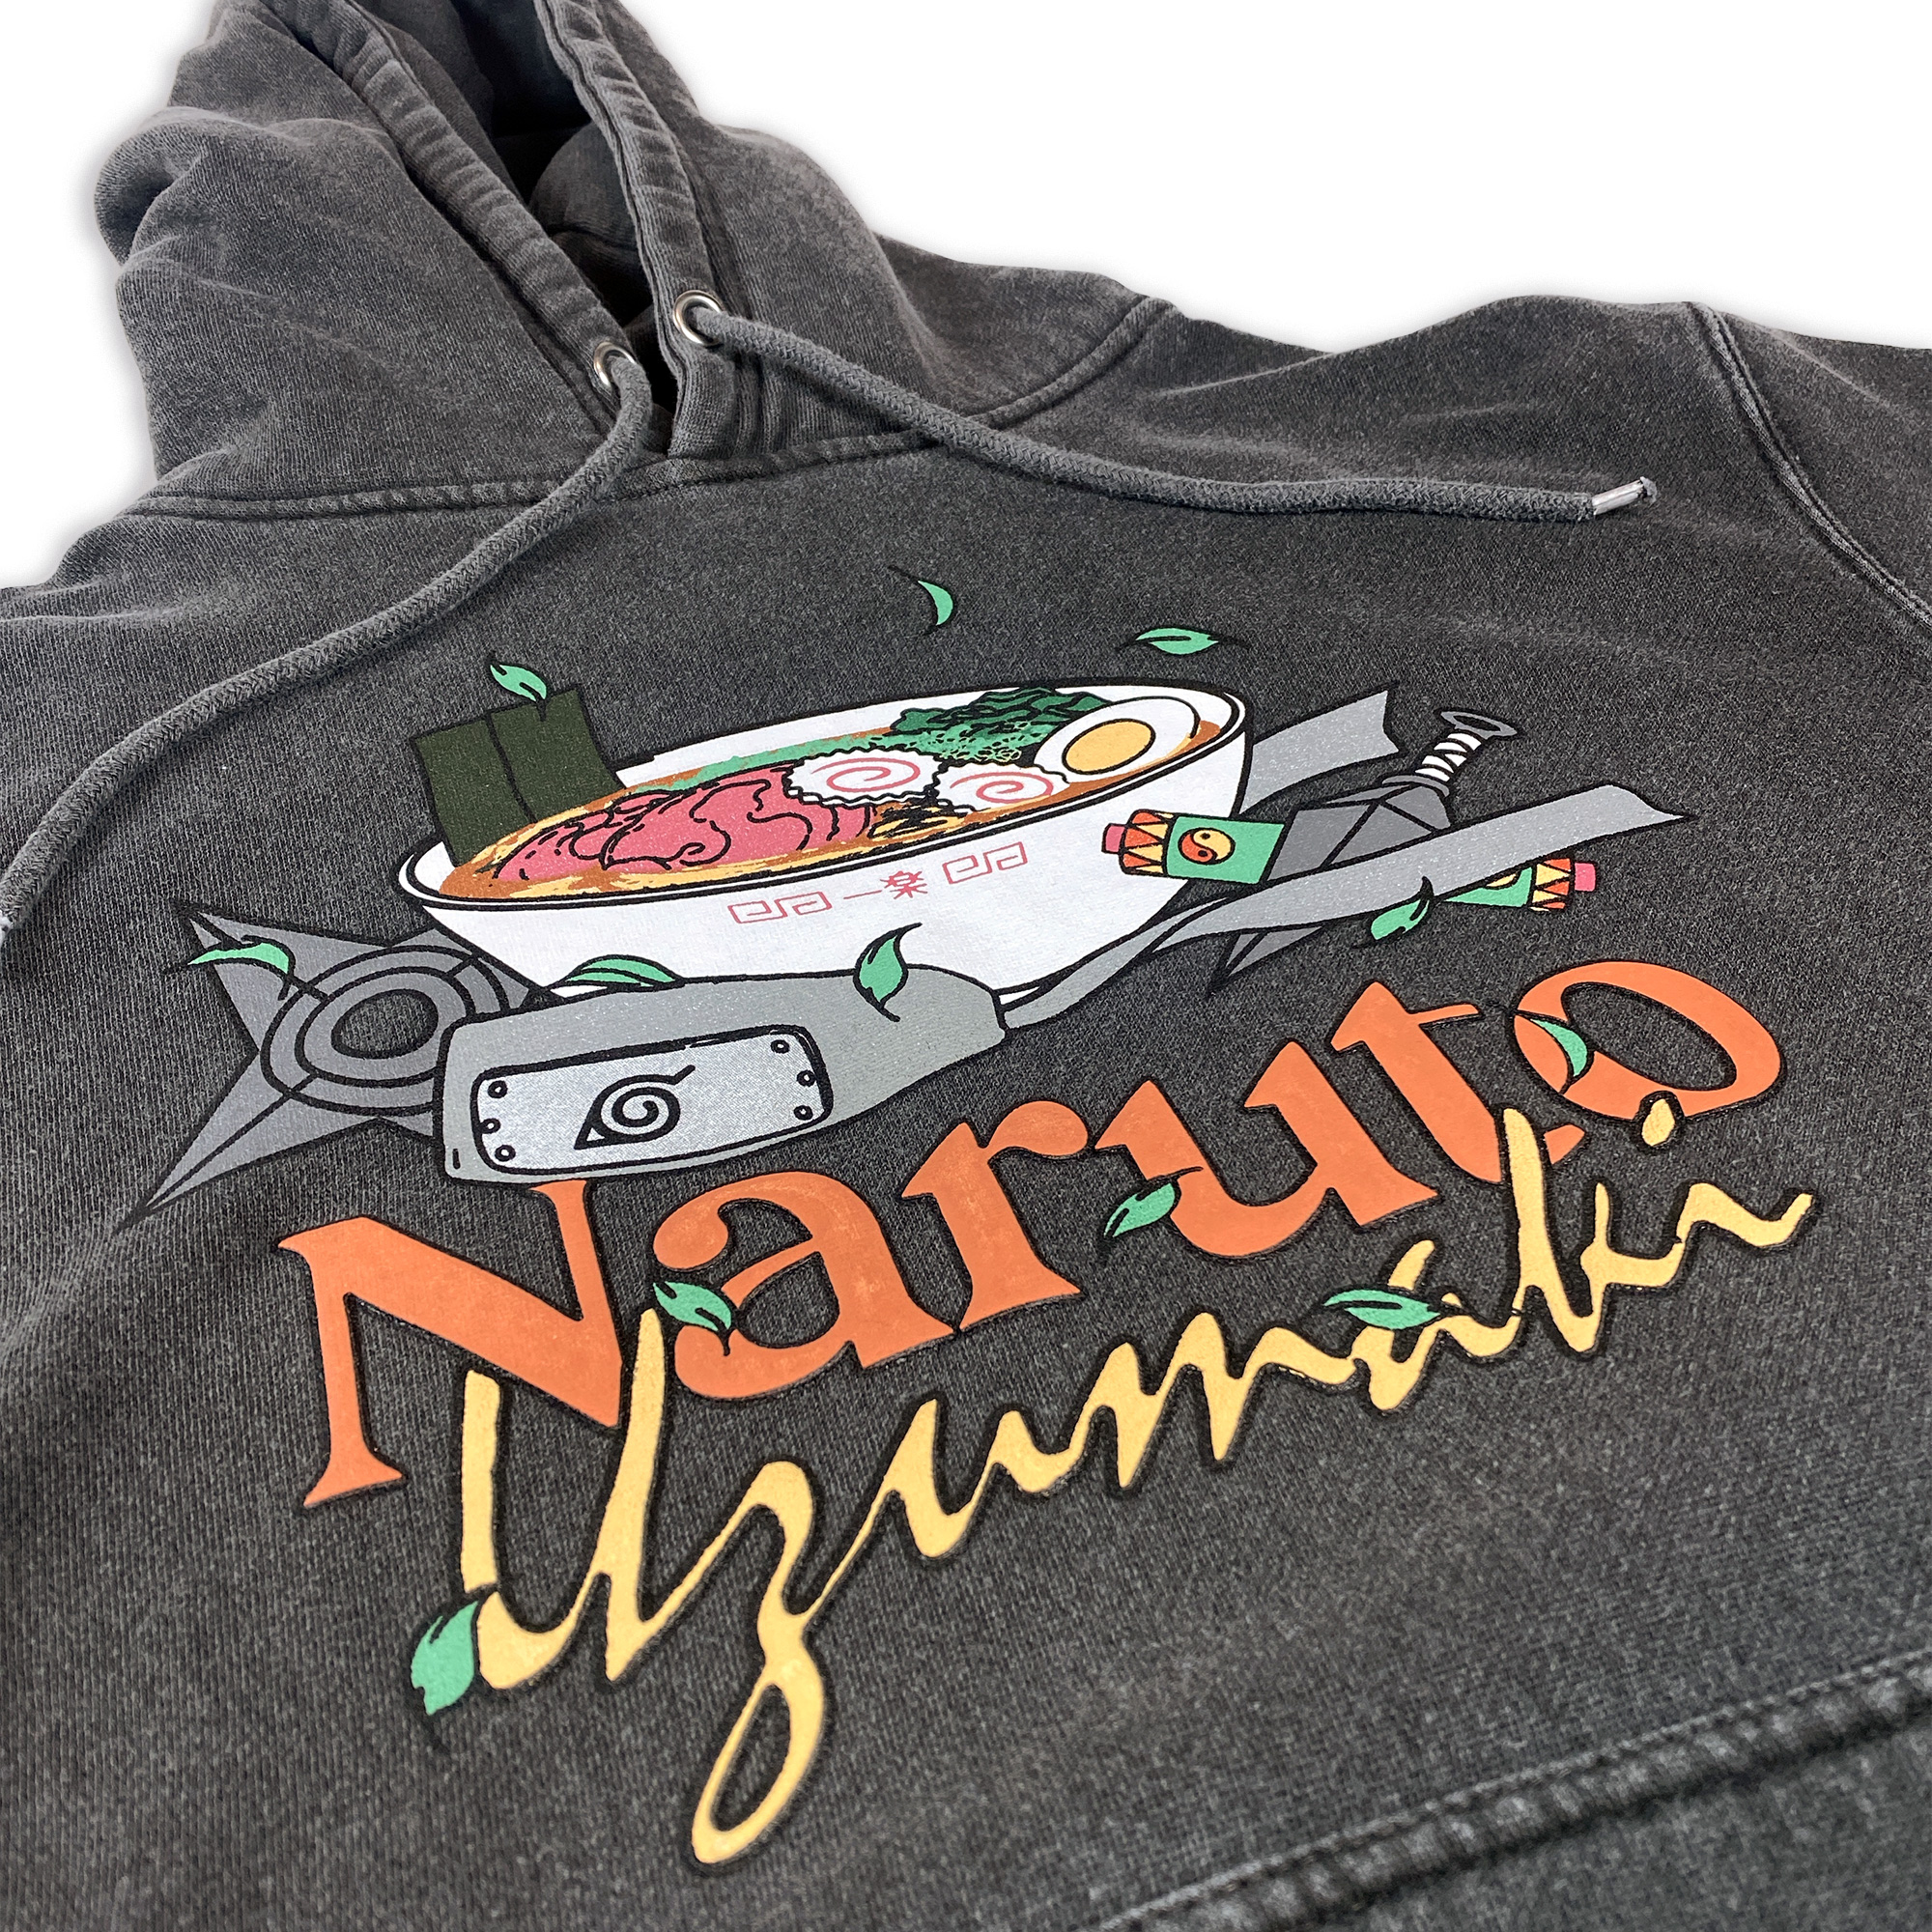 Naruto Shippuden - Uzumaki Icons Hoodie - Crunchyroll Exclusive! image count 1